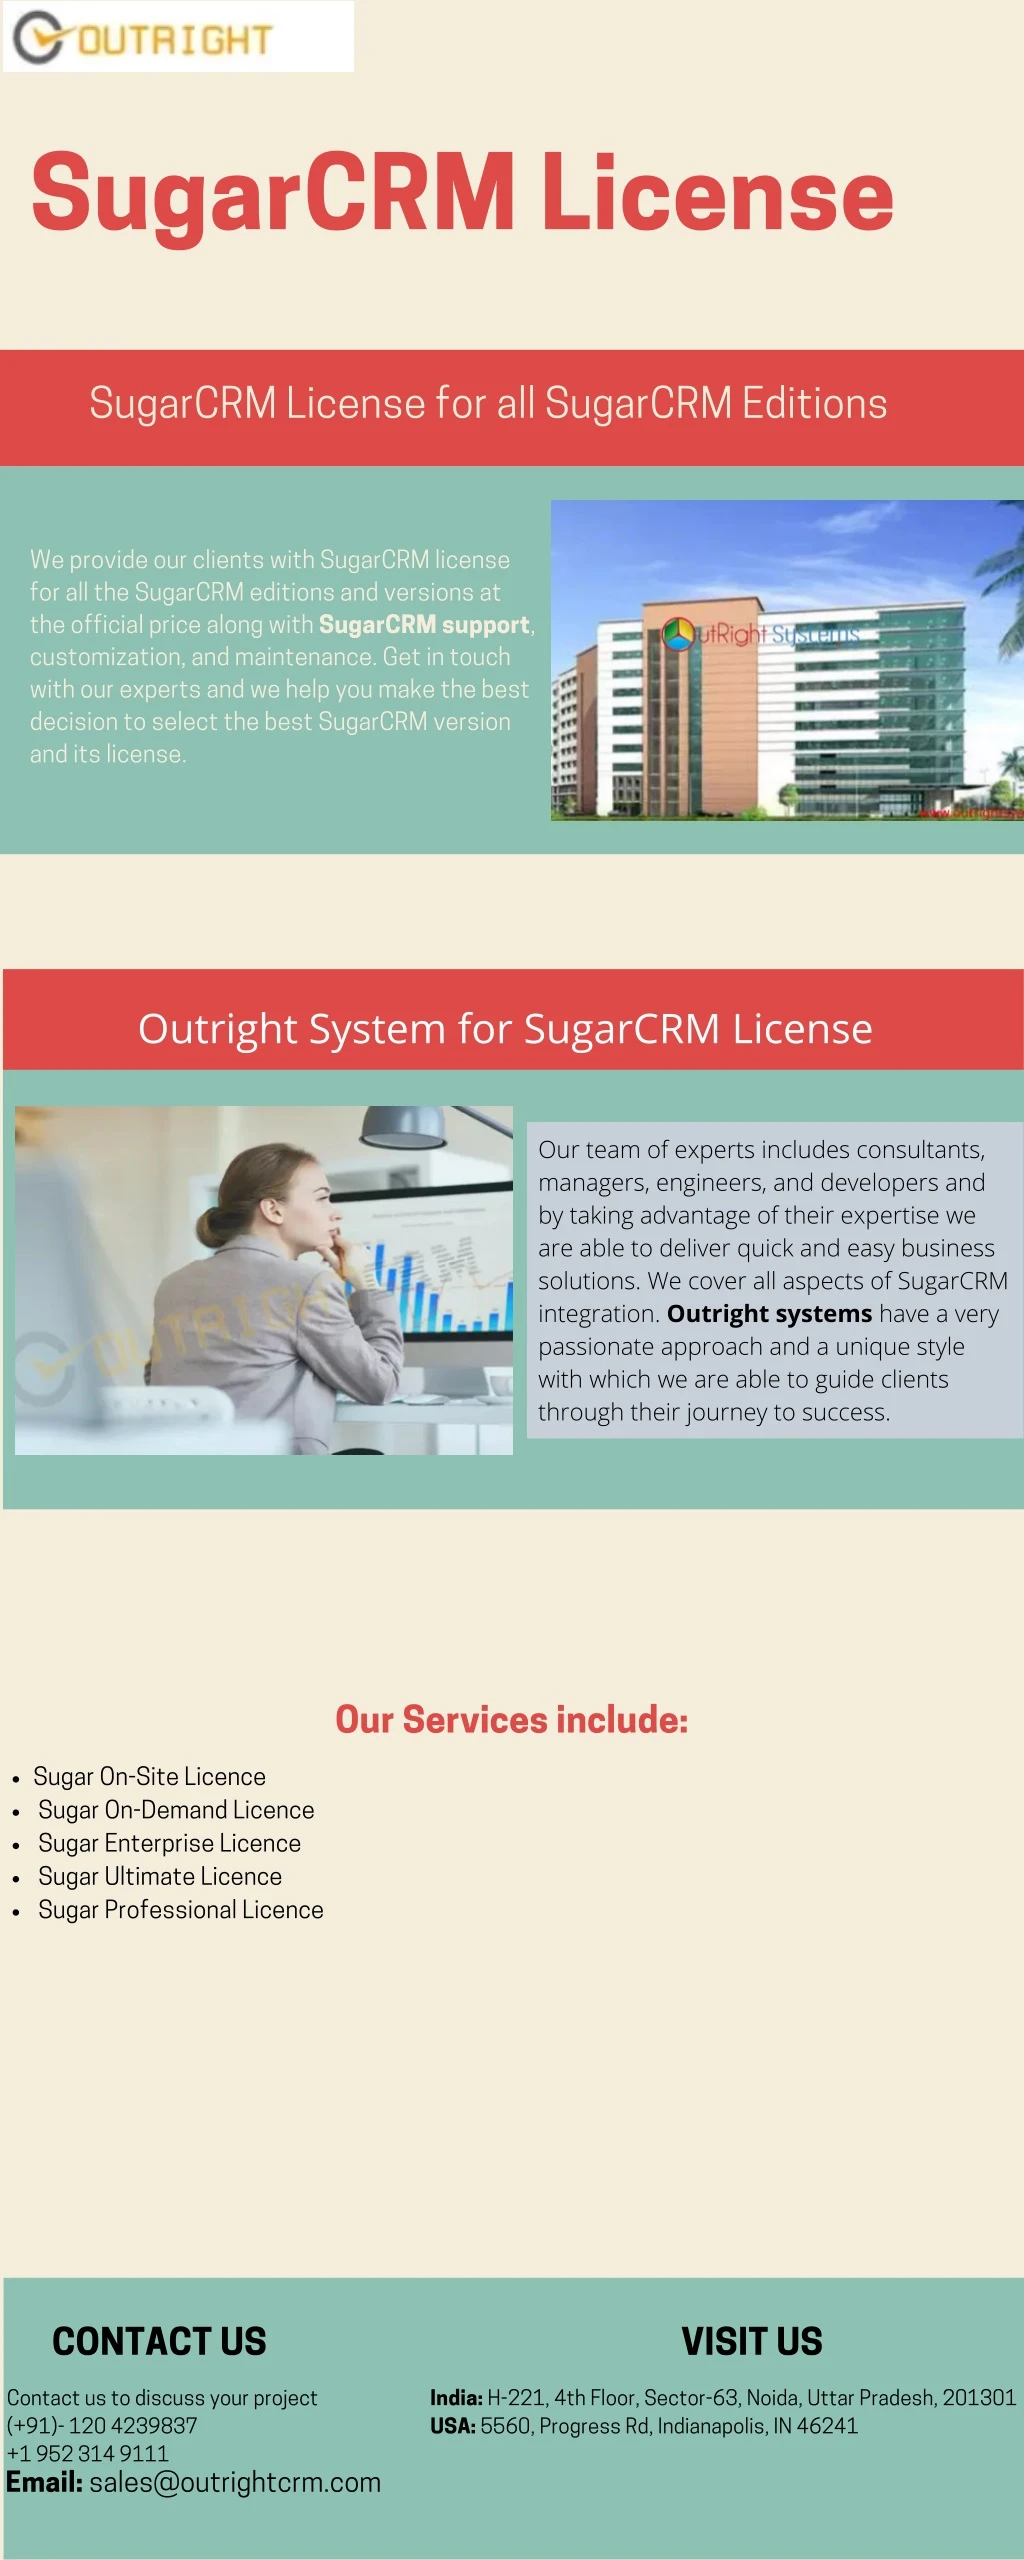 sugarcrm license